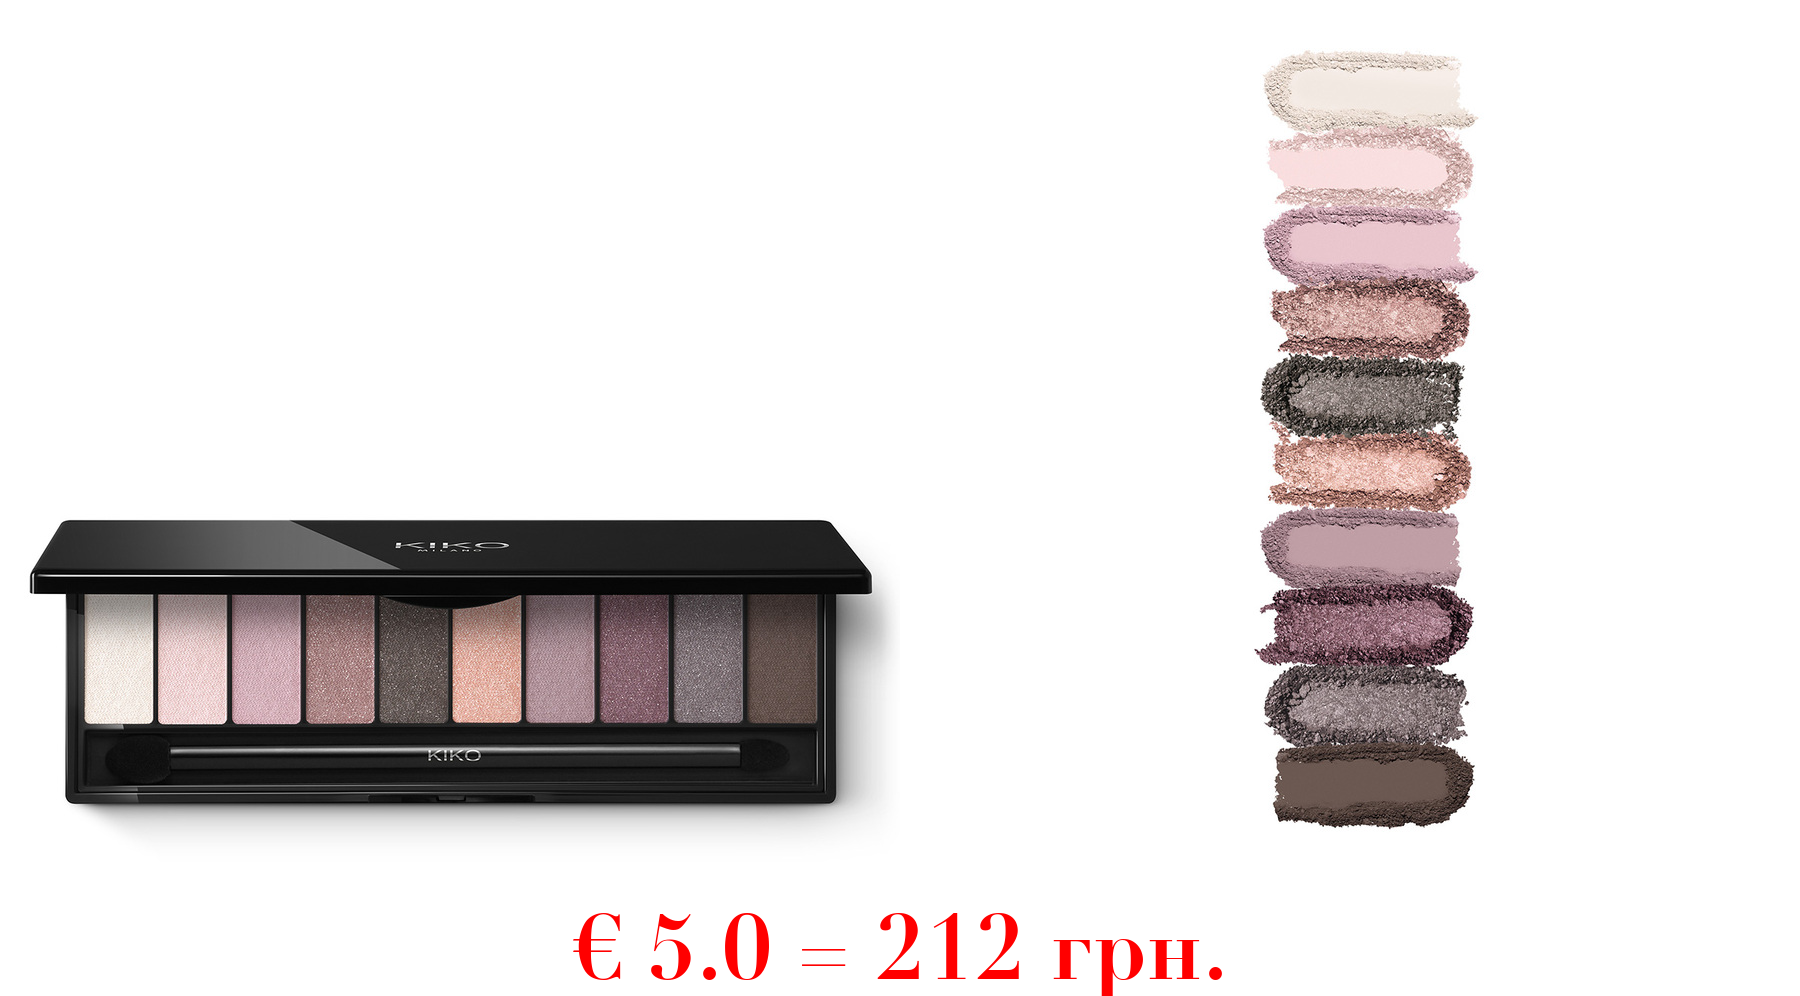 soft nude eyeshadow palettePalette mit 10 Lidschatten in unterschiedlichen Finishes. Inklusive Doppel-Applikator